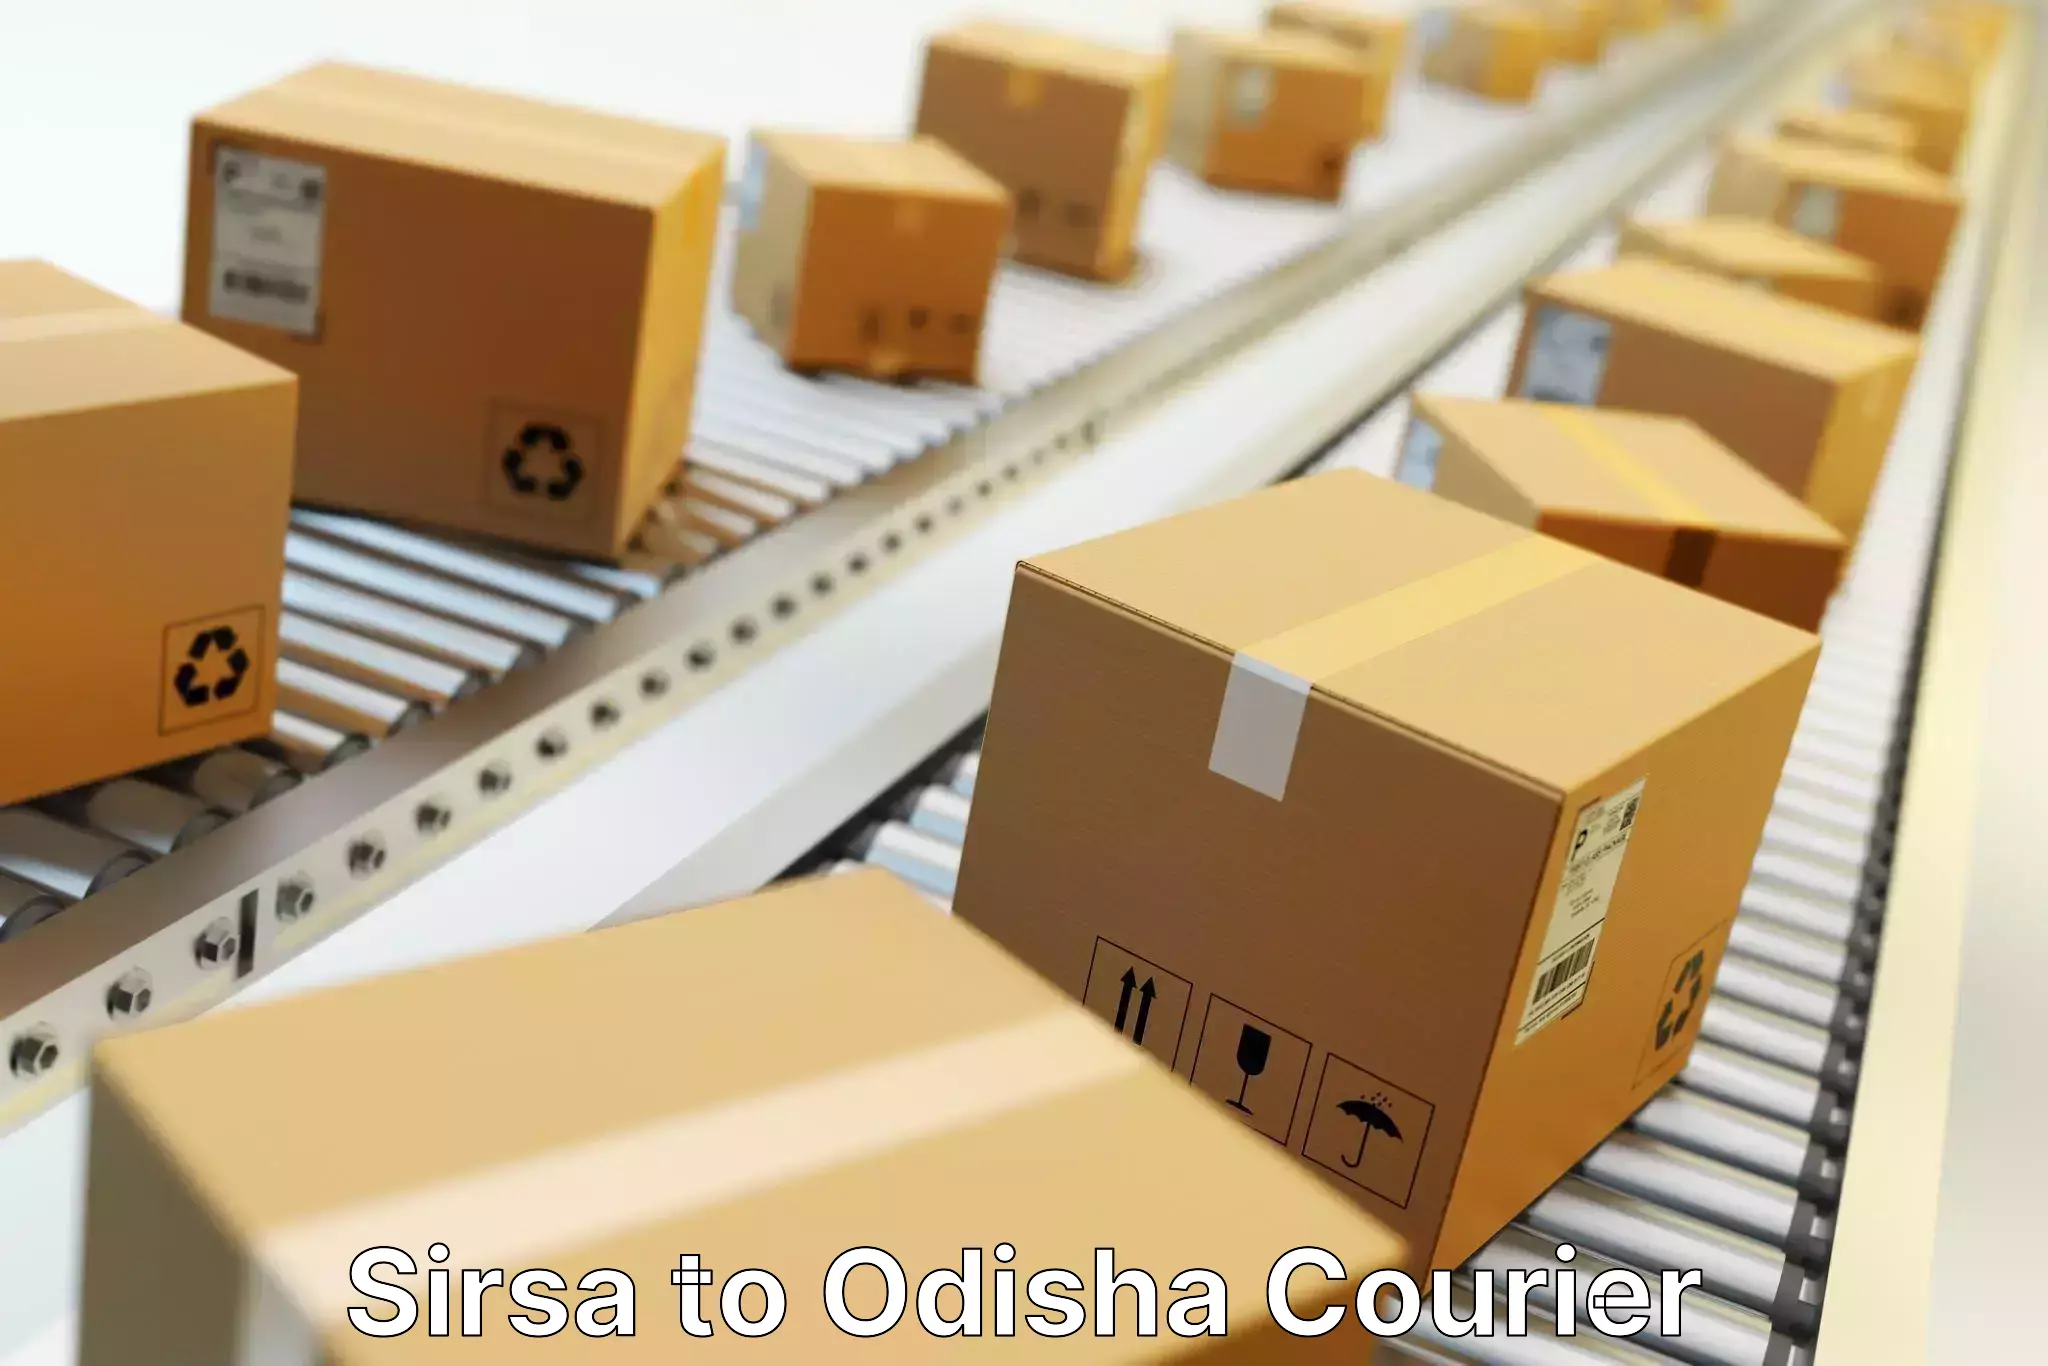 Customer-centric shipping Sirsa to Odisha